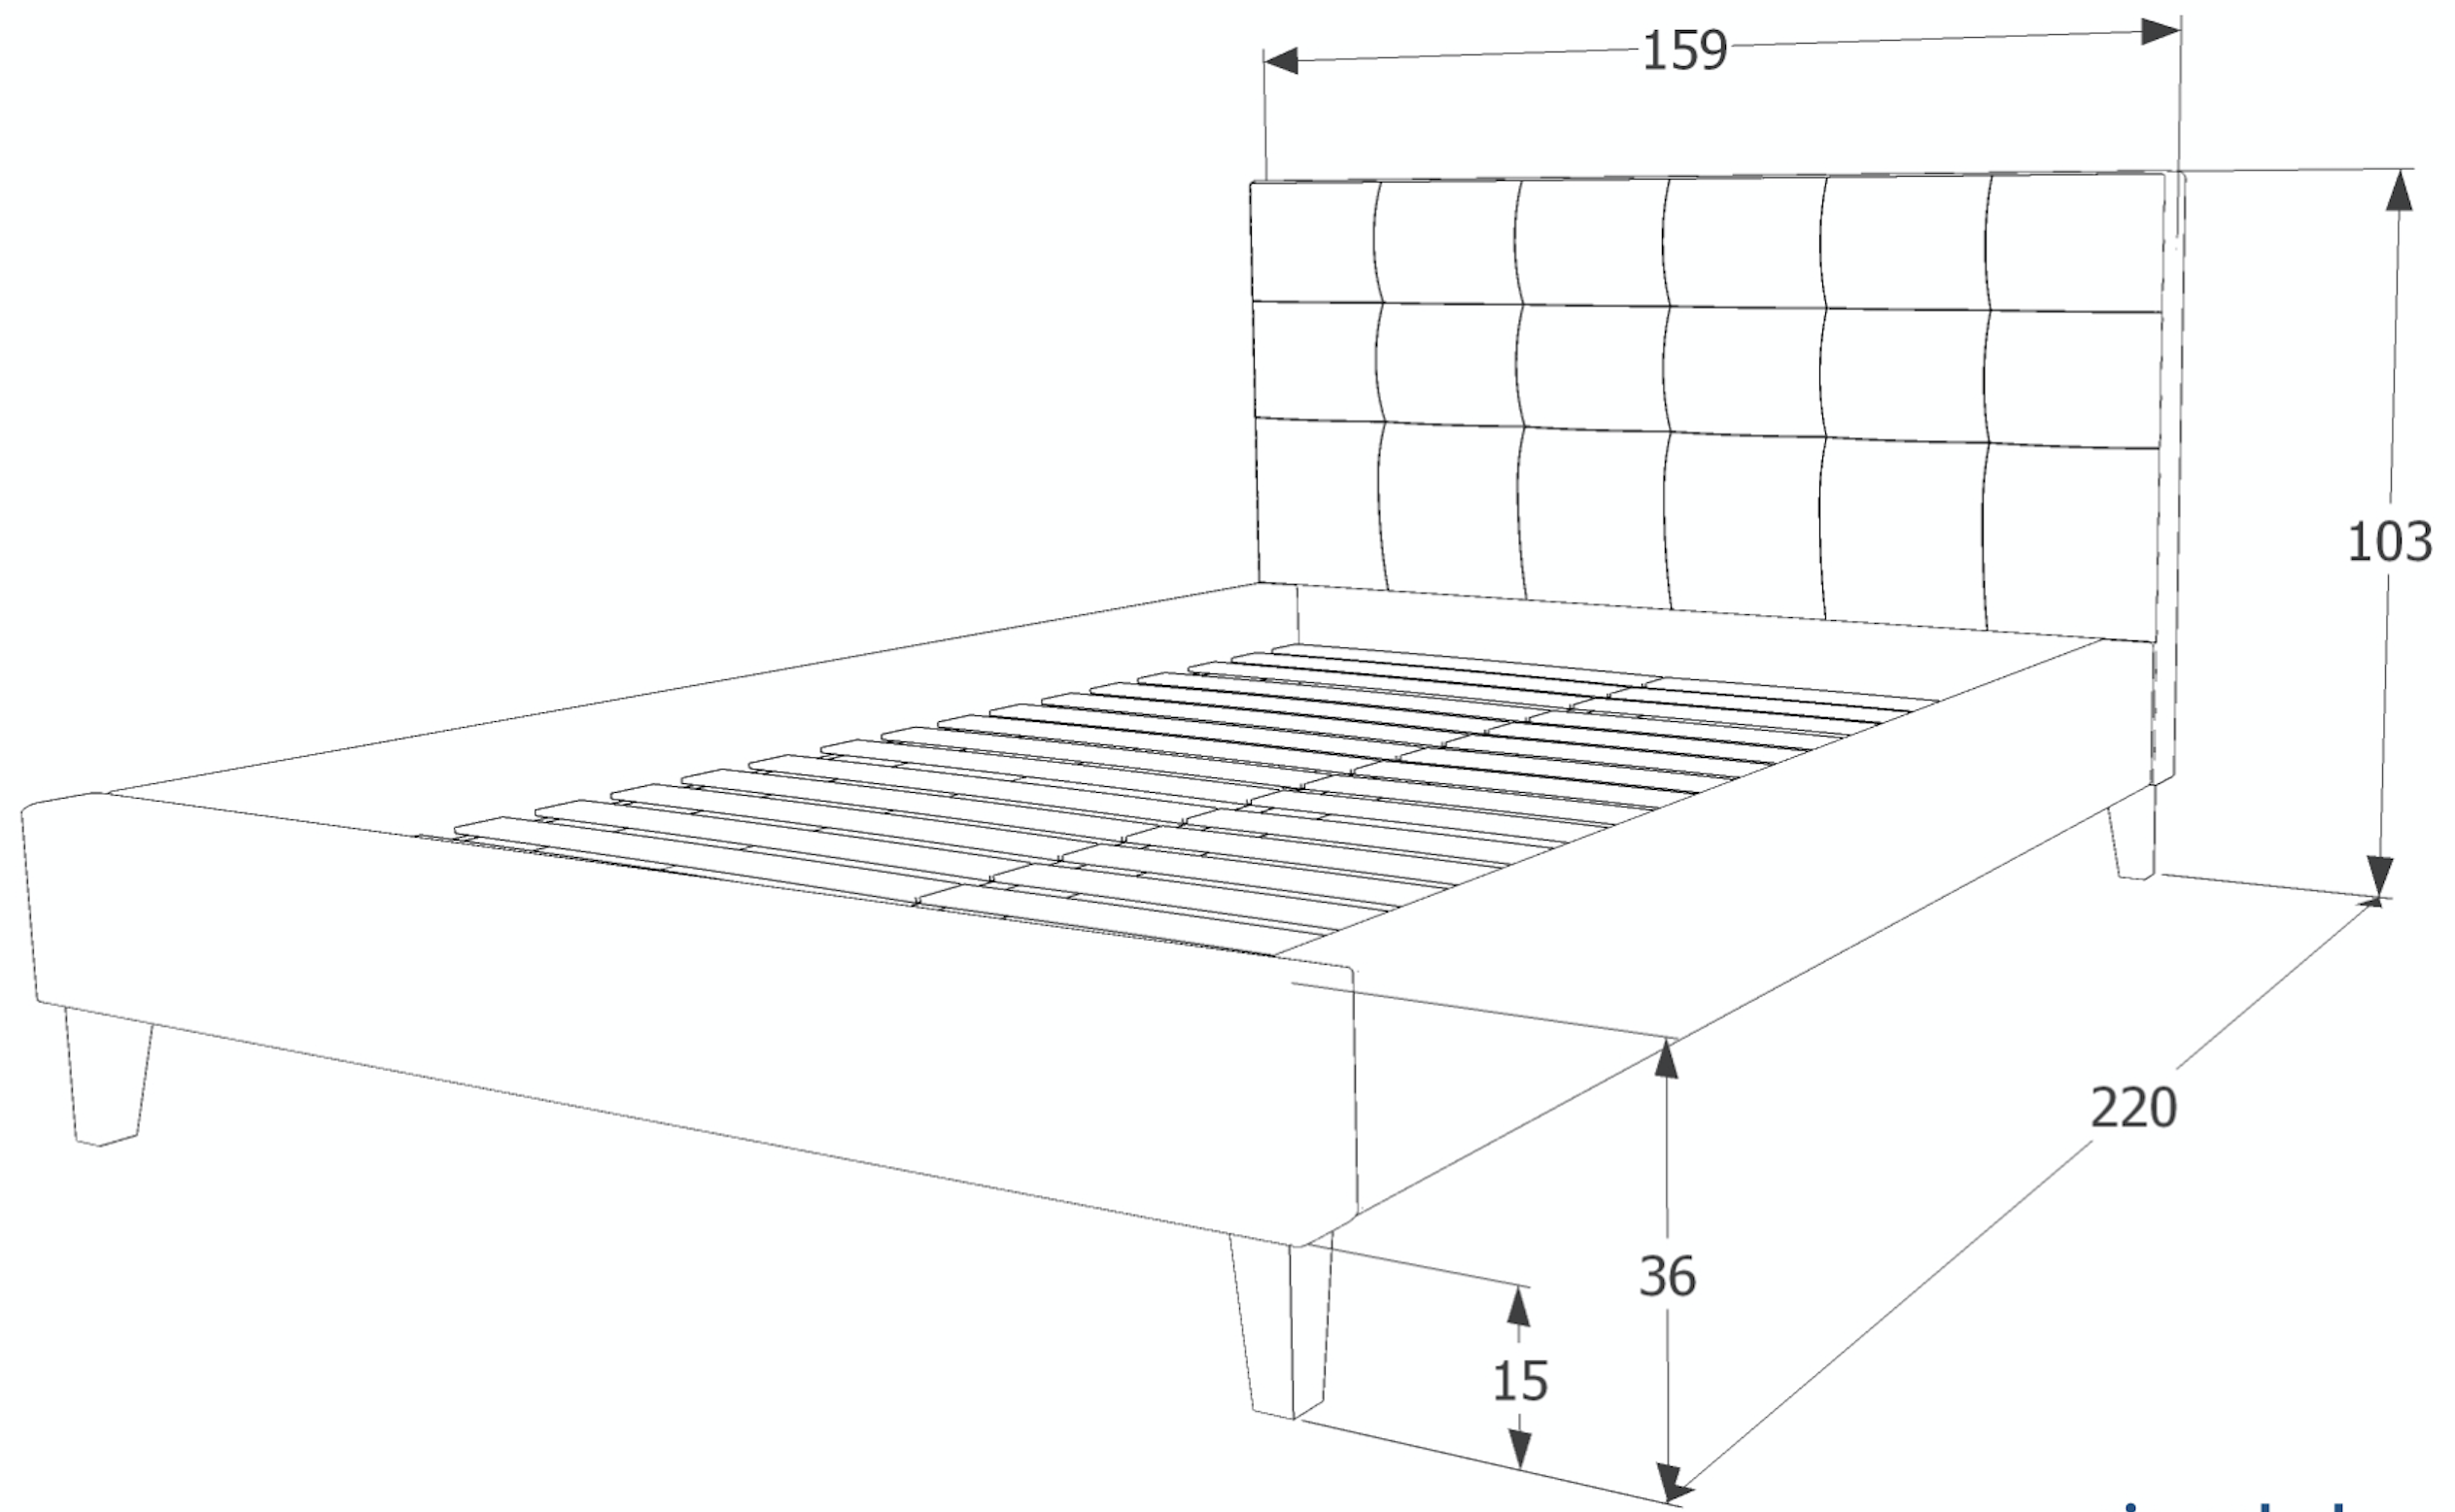 Čalouněná postel TEXAS 140 x 200 cm šedá